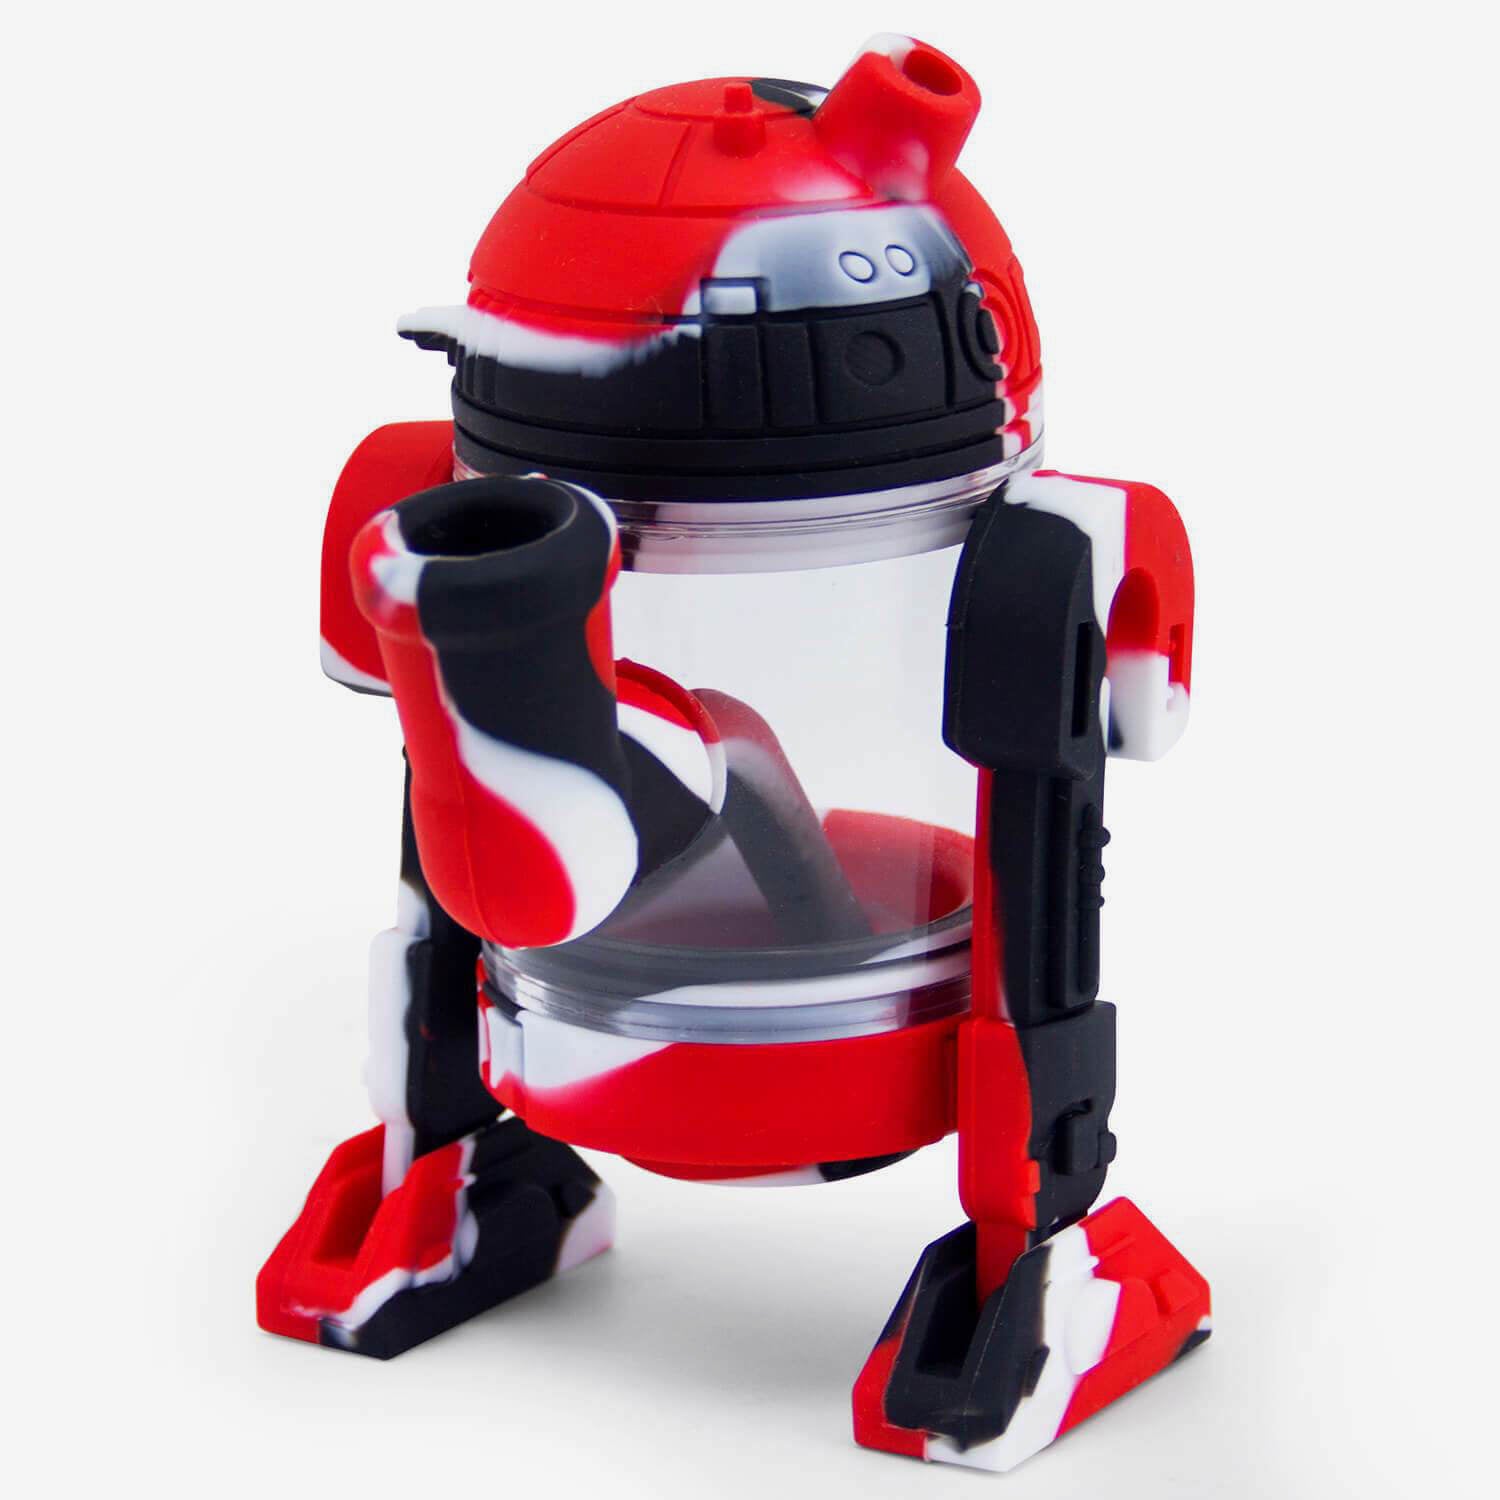 Silicone Bubbler Robot - INHALCO